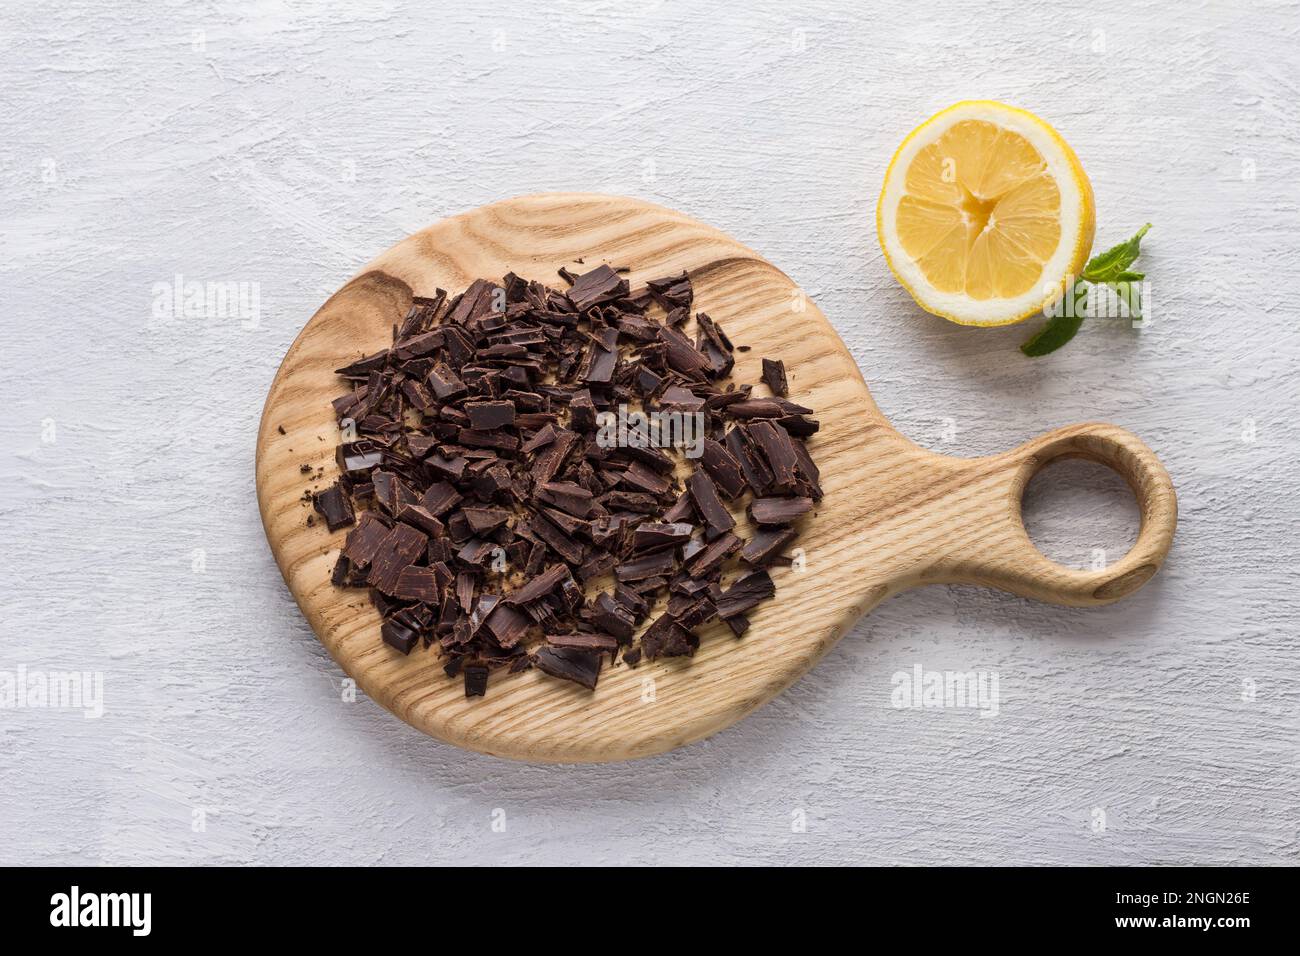 Asse di legno con cioccolato amaro tritato, mezzo limone e menta su sfondo grigio chiaro testurizzato, vista dall'alto, piatto Foto Stock